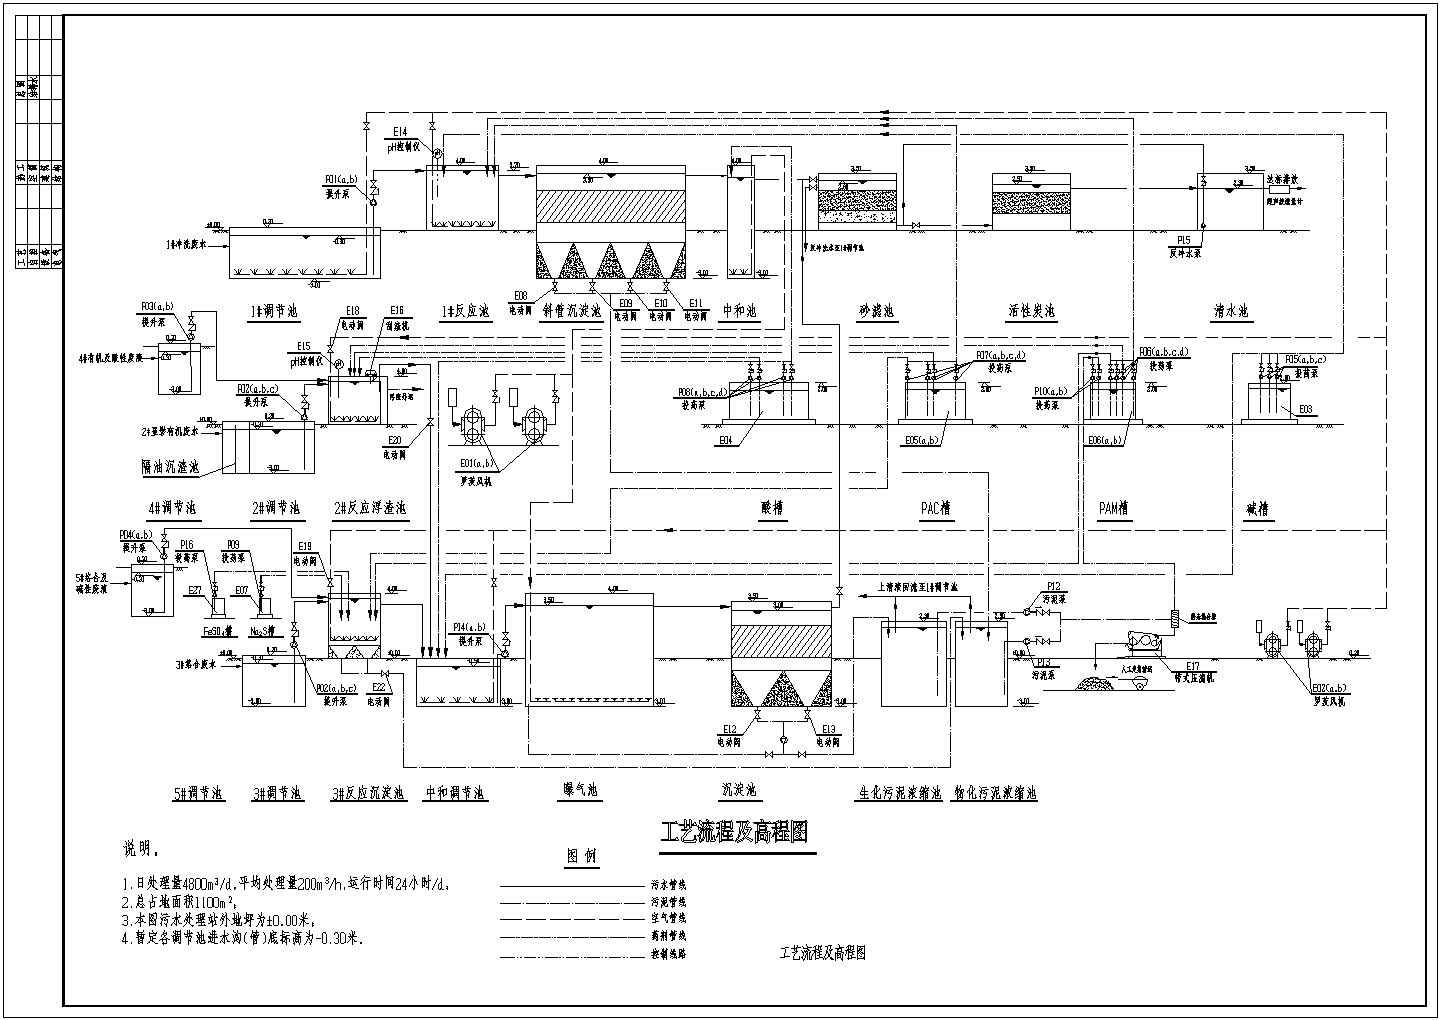 【最新】某印刷电路板厂污水水解酸化处理设计CAD图纸